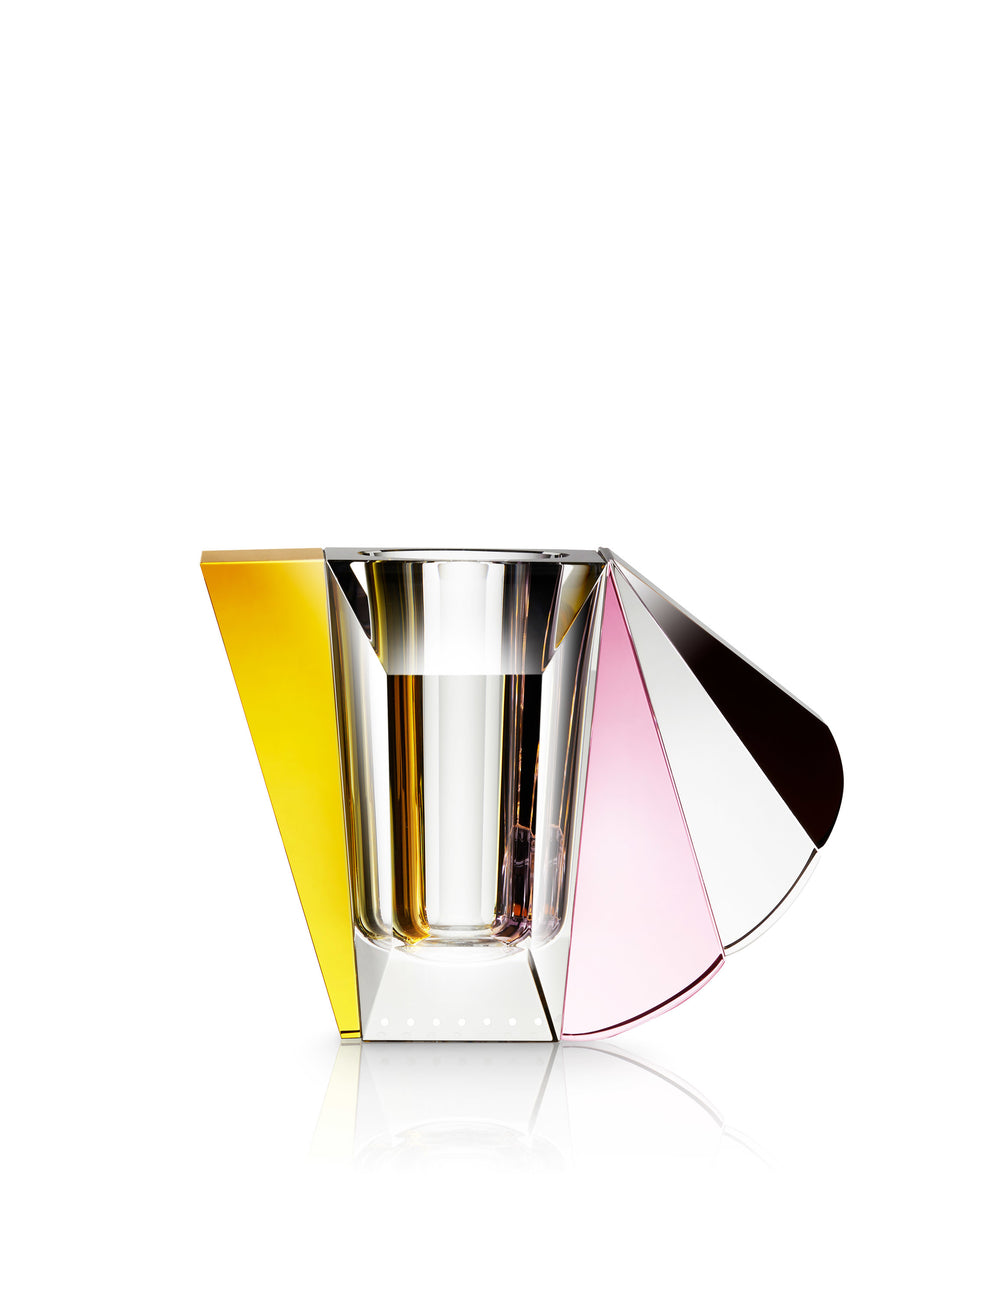 Vase i klar, brun, gul og lyserød krystal på hvid baggrund.